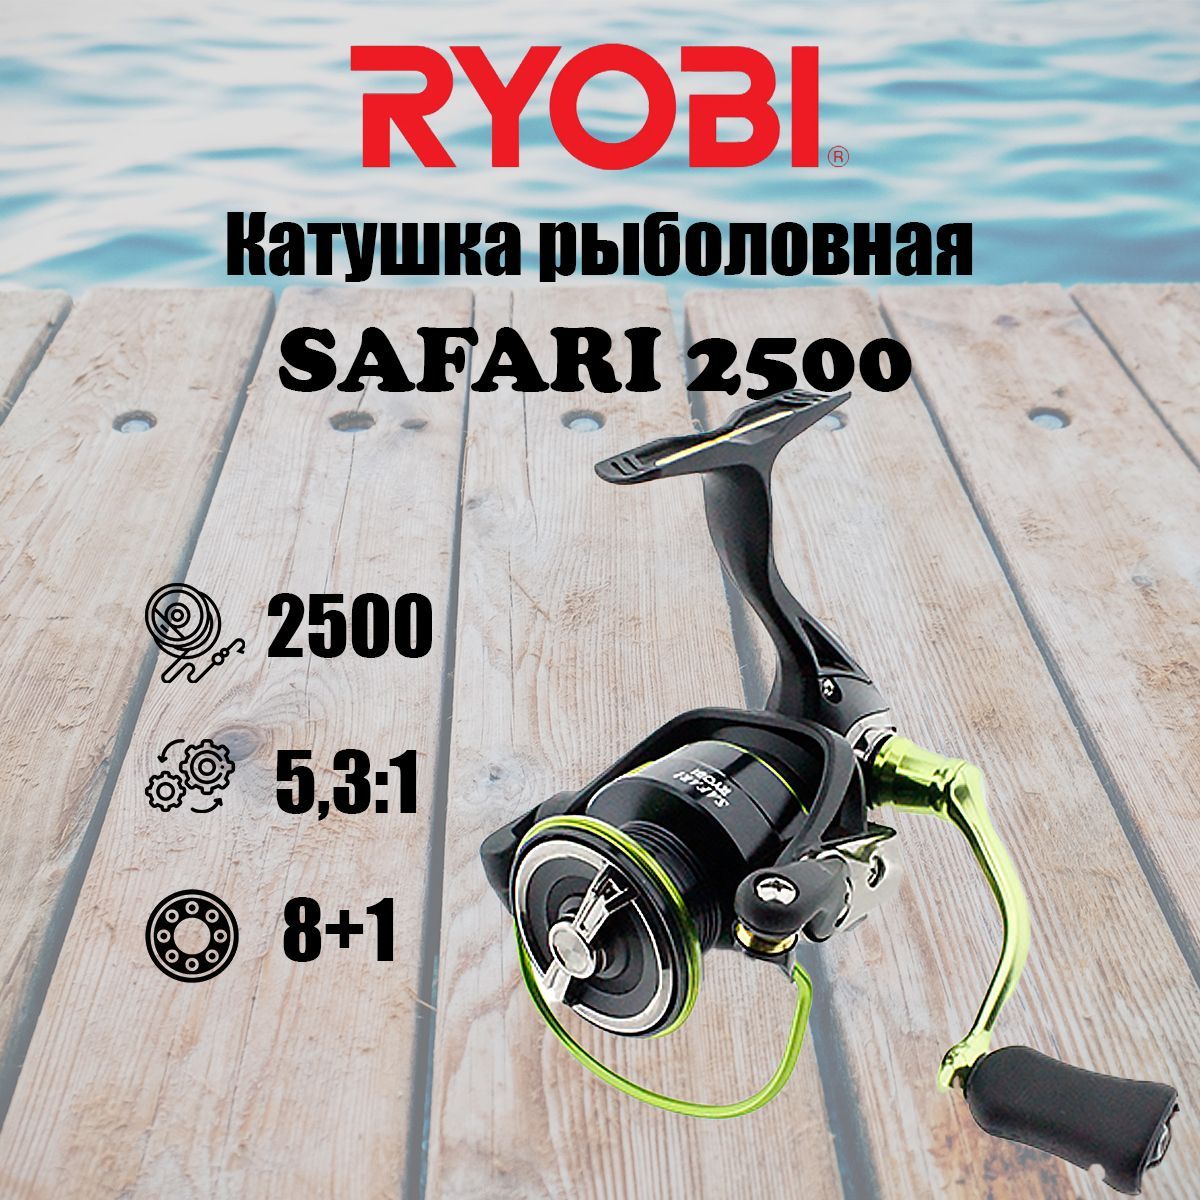 Катушка для рыбалки RYOBI SAFARI 2500